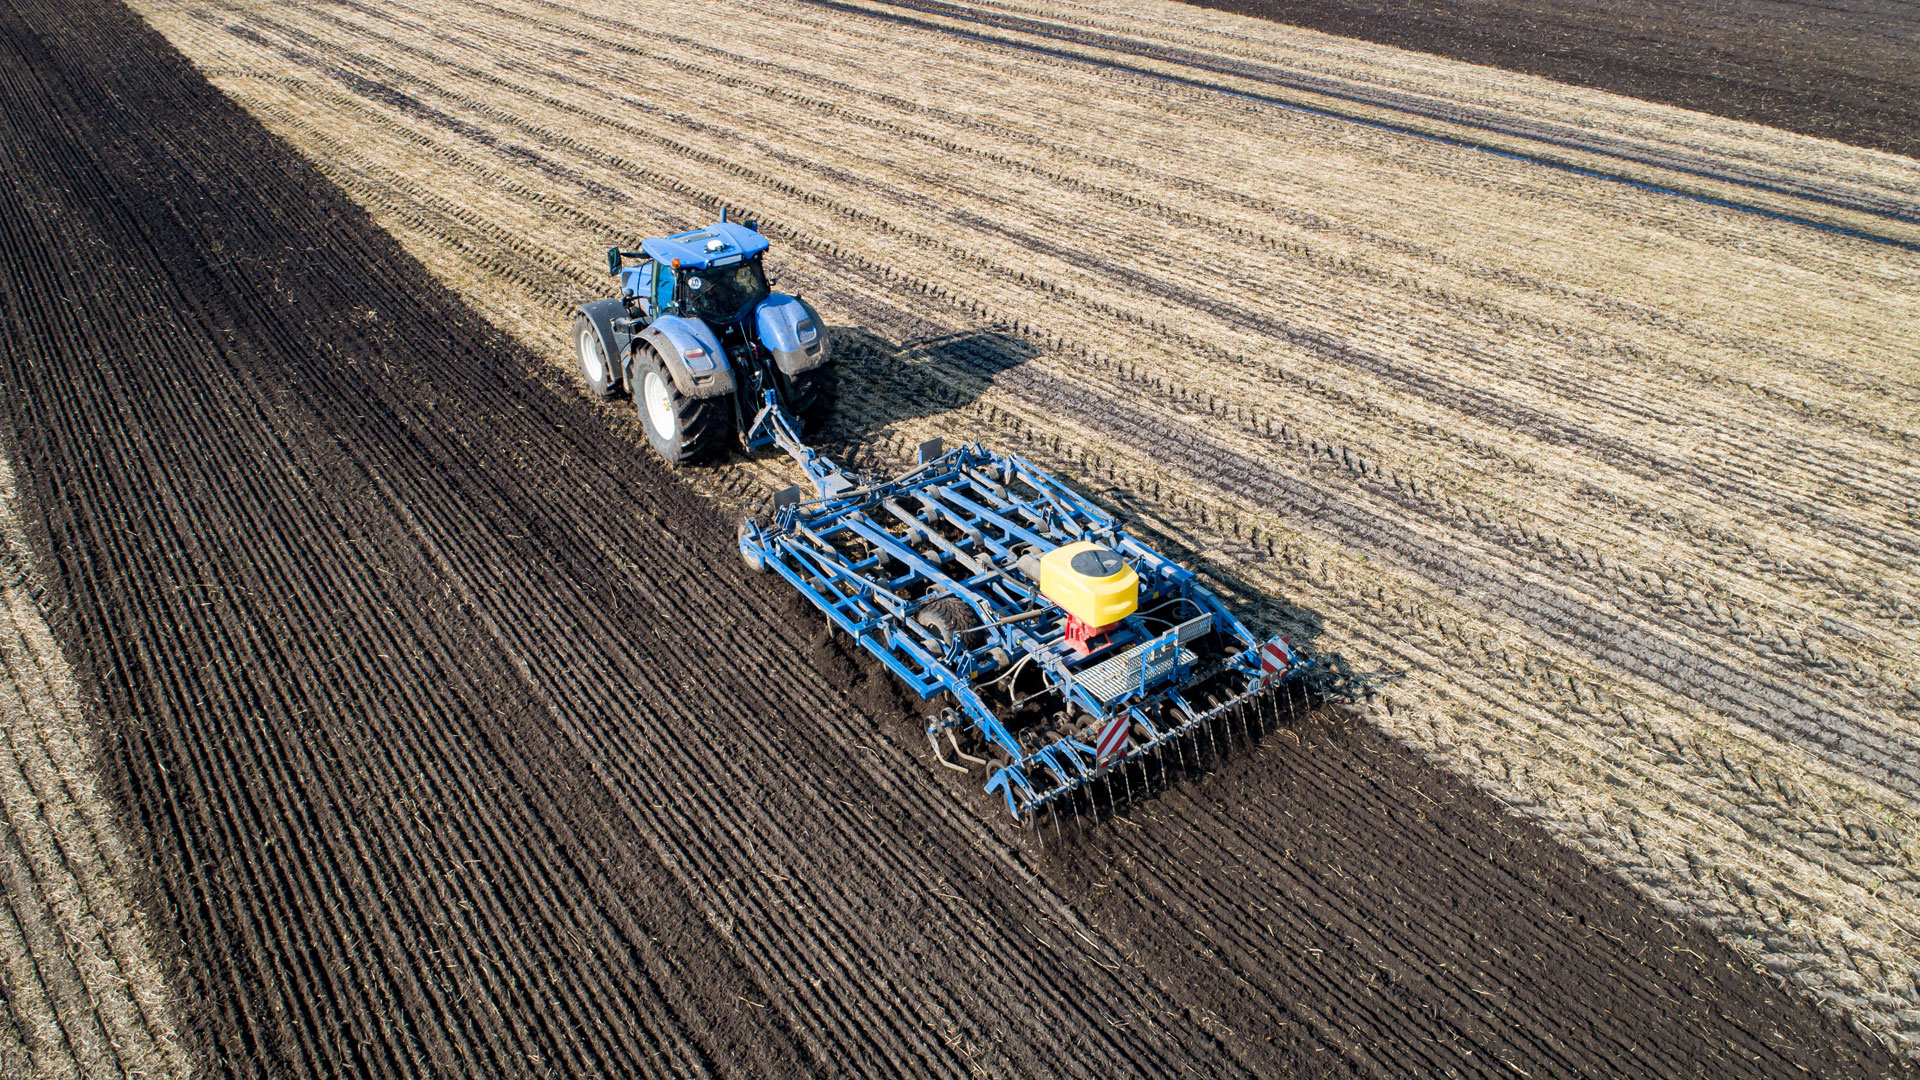 Traktor mit schwerem Grubber arbeitet Gülle in den Boden ein. | picture alliance / Countrypixel